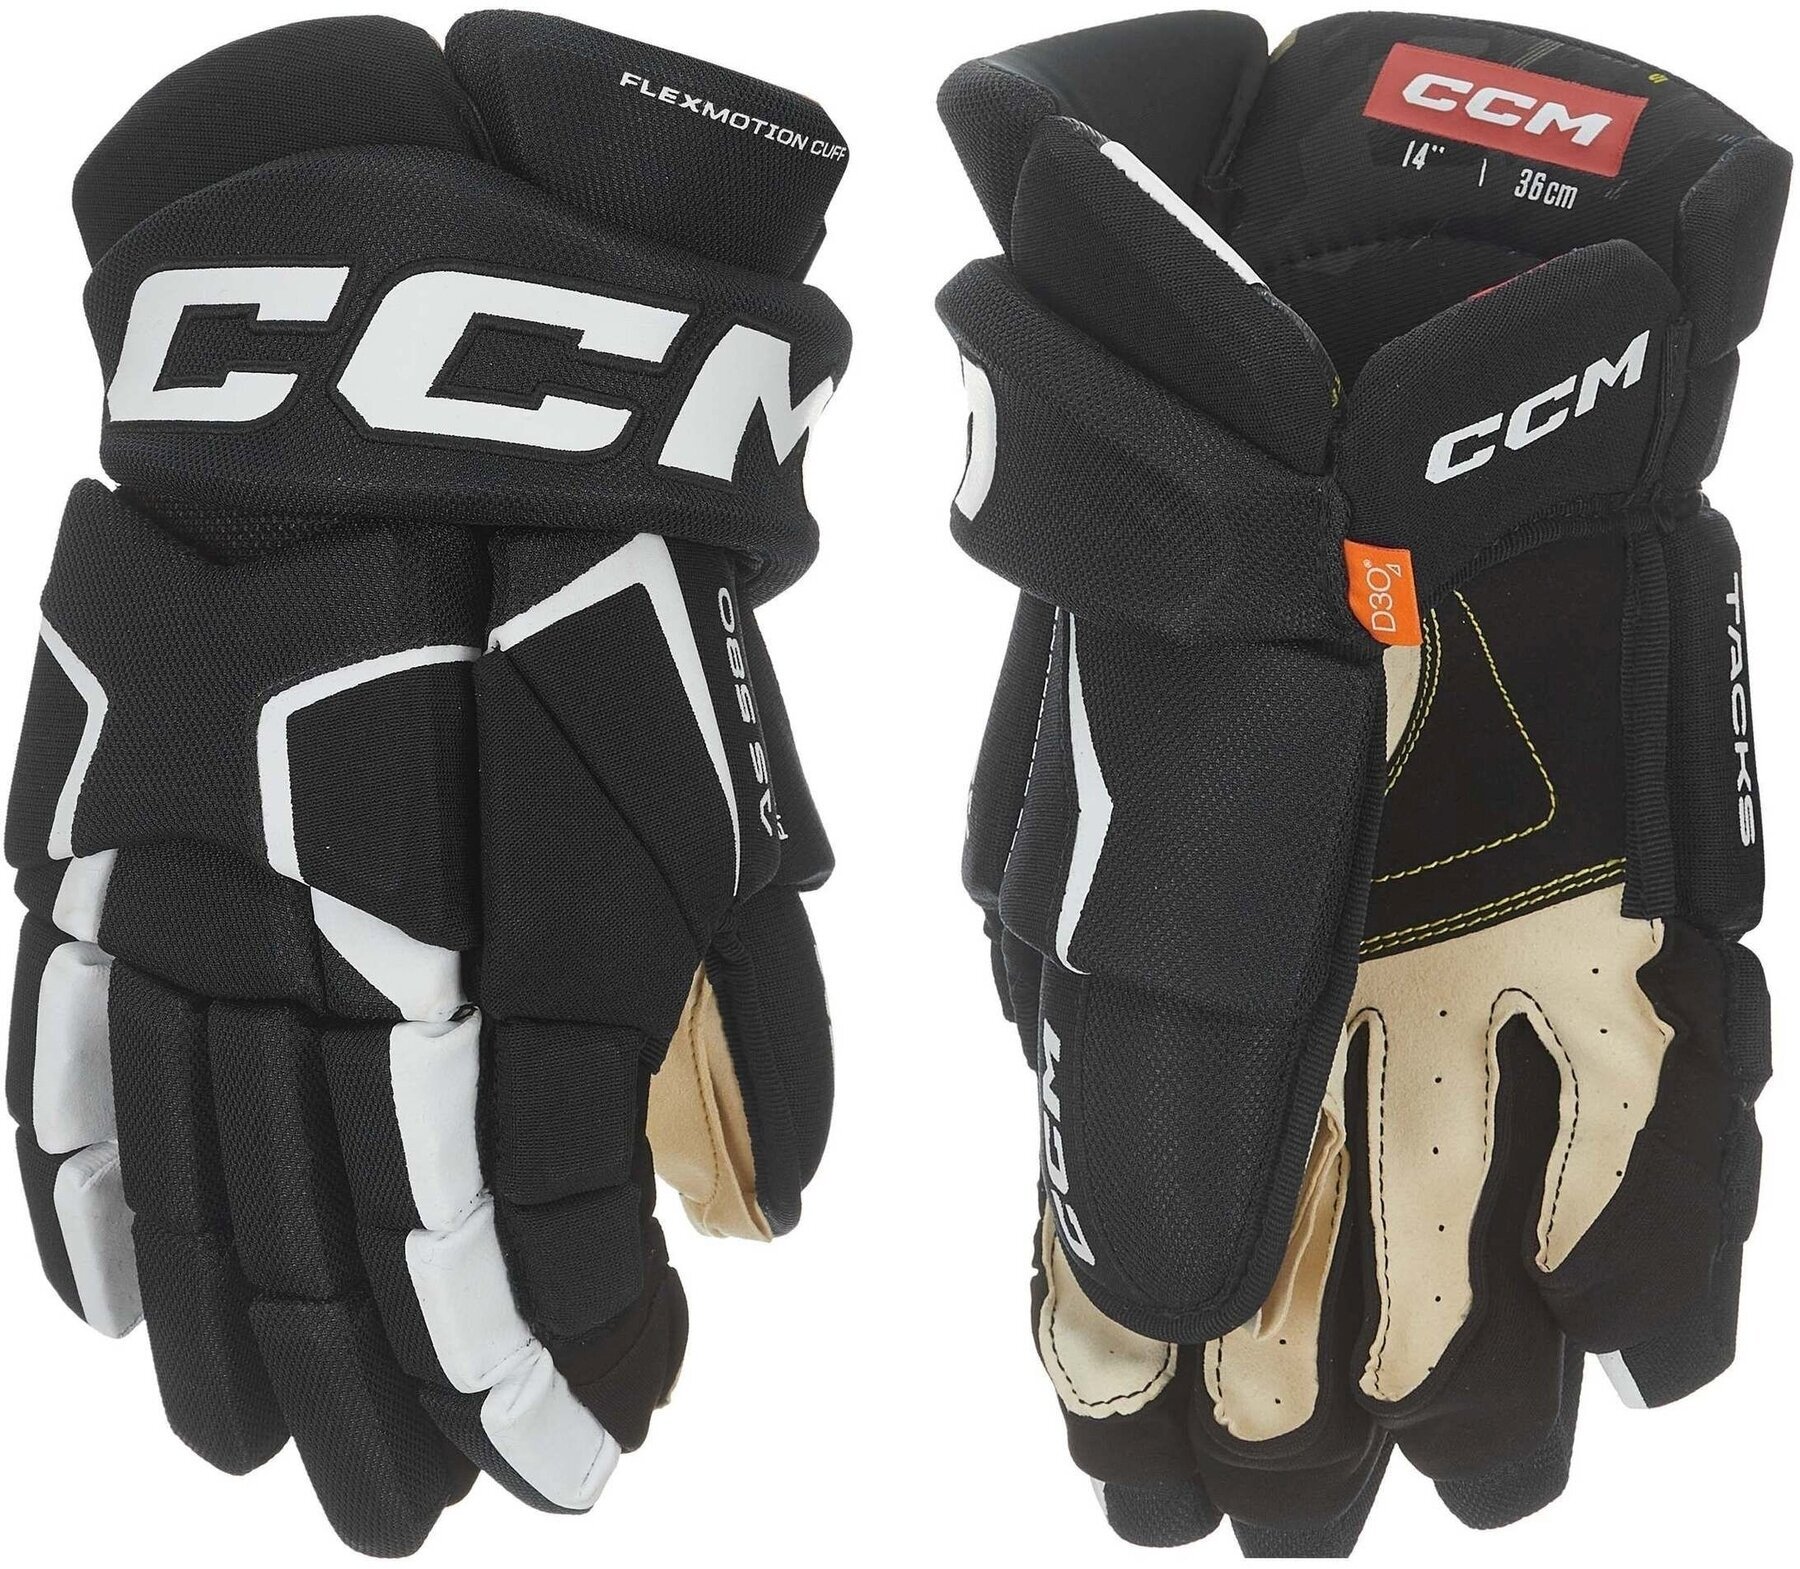 Hockey Gloves CCM Tacks AS 580 SR 14 Black/White Hockey Gloves